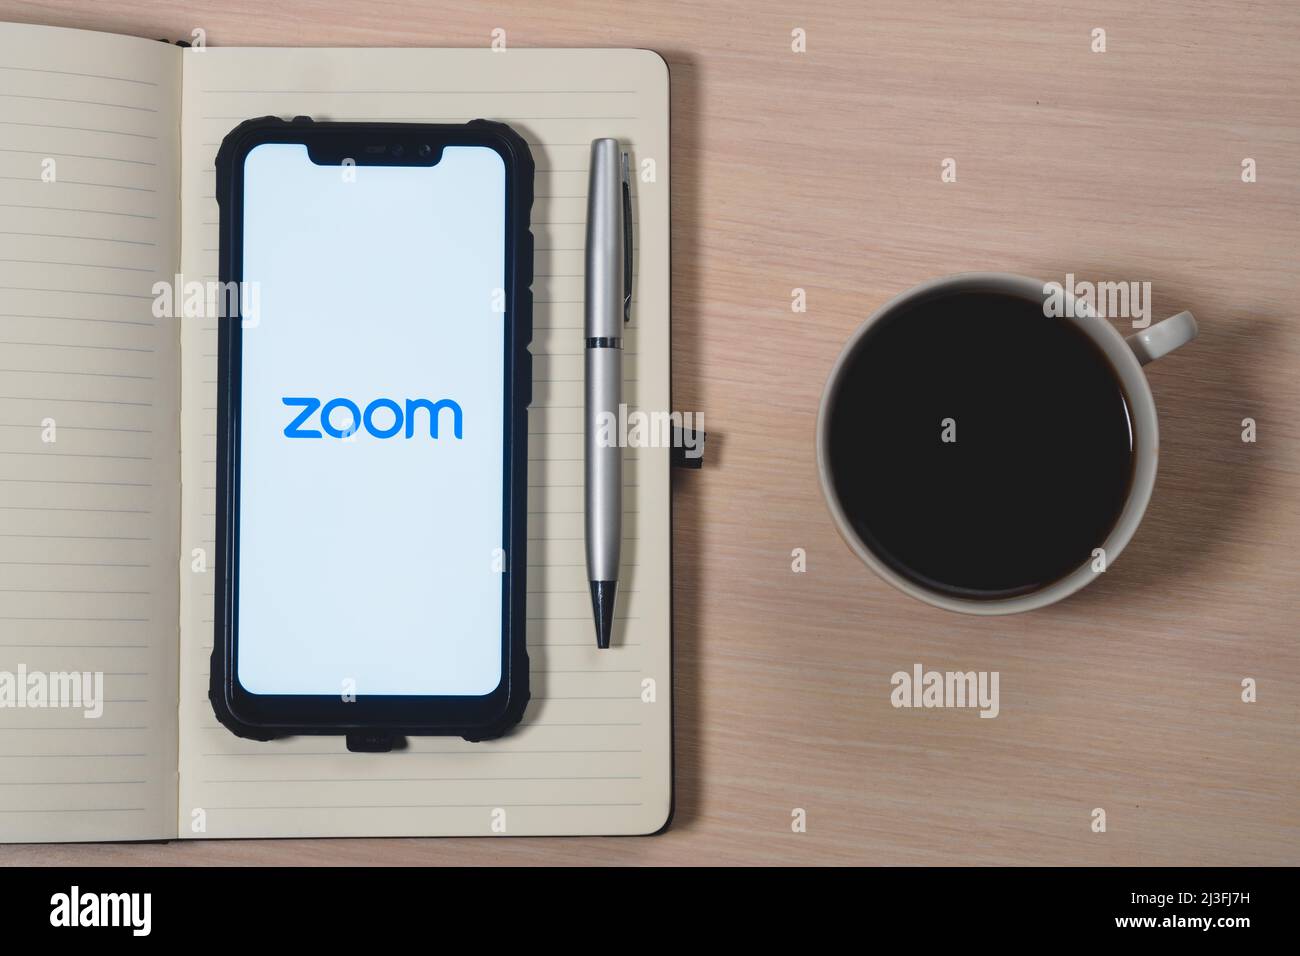 Zoom-App-Logo auf dem Bildschirm des Smartphones. Zoom Video Communications ist ein Unternehmen, das Remote-Konferenzdienste anbietet. Tagesplaner, Stift und Becher Stockfoto